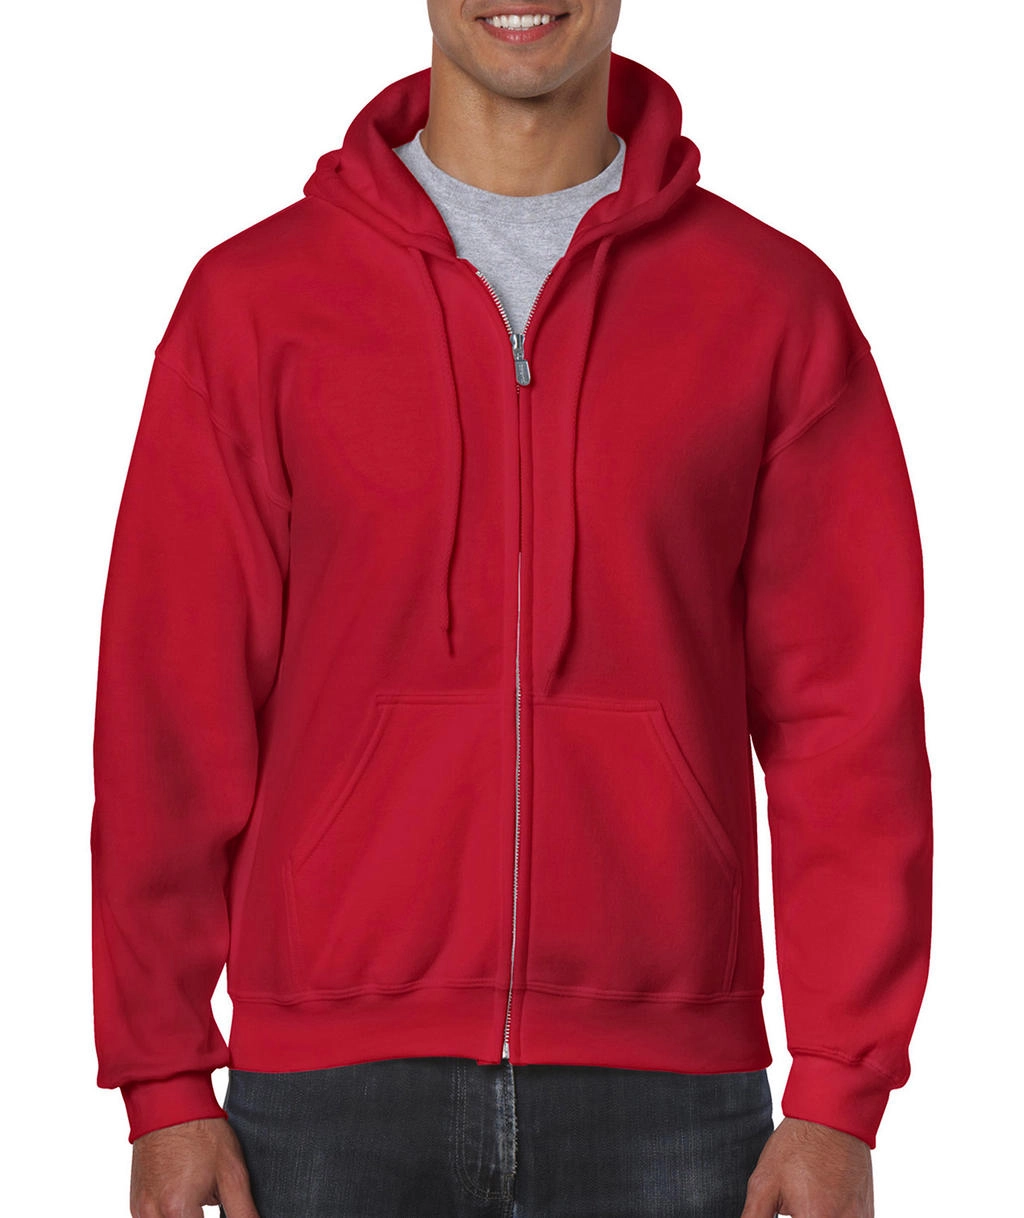 Heavy Blend Adult Full Zip Hooded Sweat zum Besticken und Bedrucken in der Farbe Red mit Ihren Logo, Schriftzug oder Motiv.